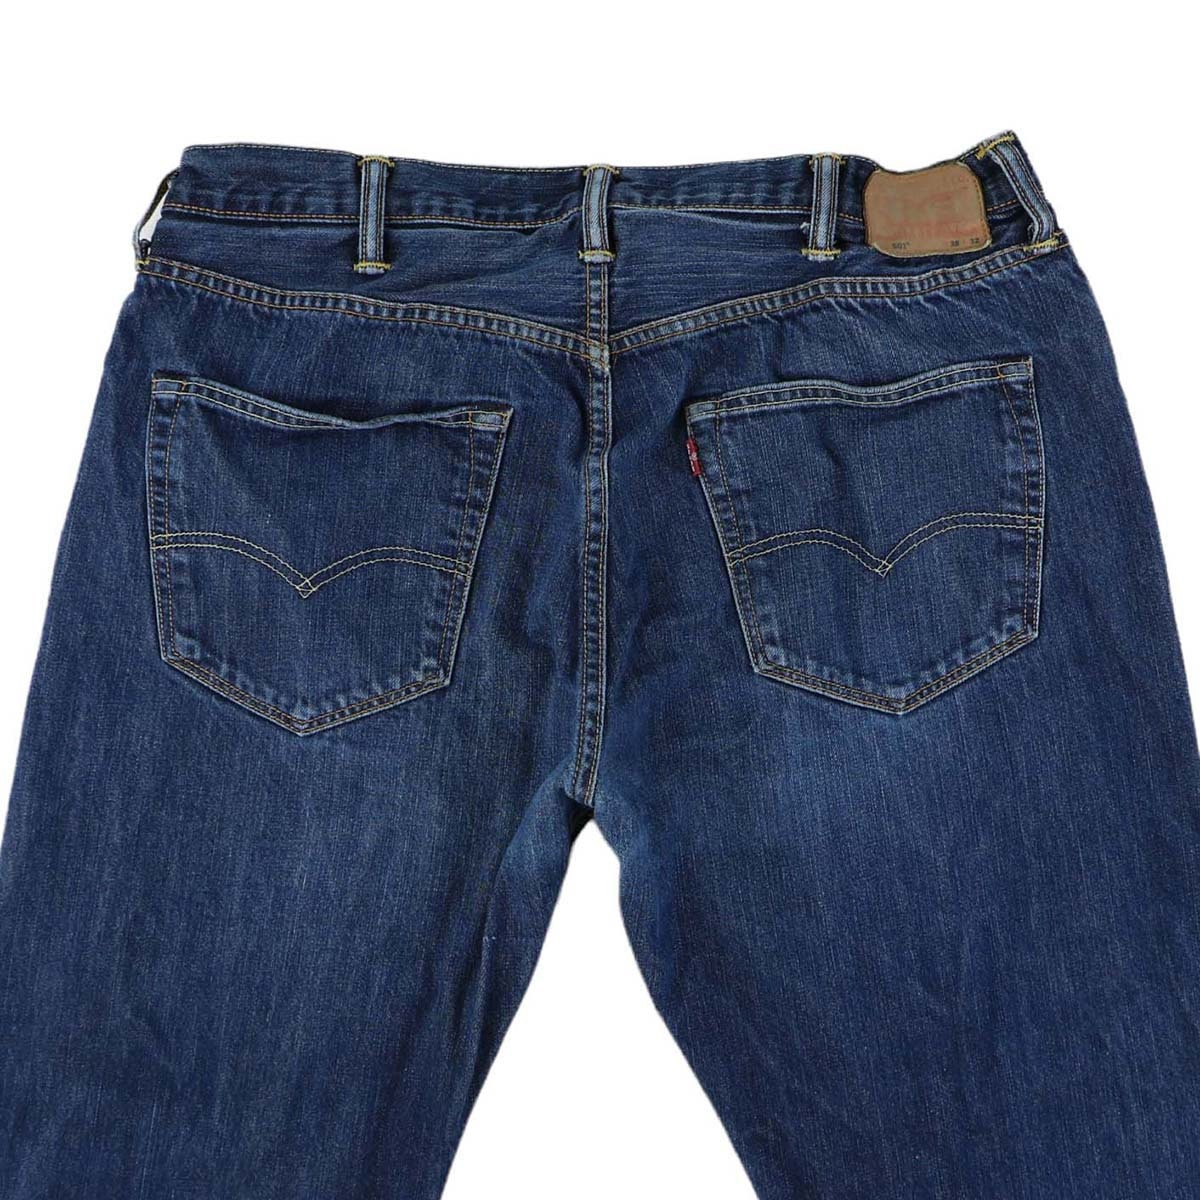 Levis Jeans 90s Levi 501 Dark Wash Blue Denim Jeans Vintage Pants Waist 36  -  Canada